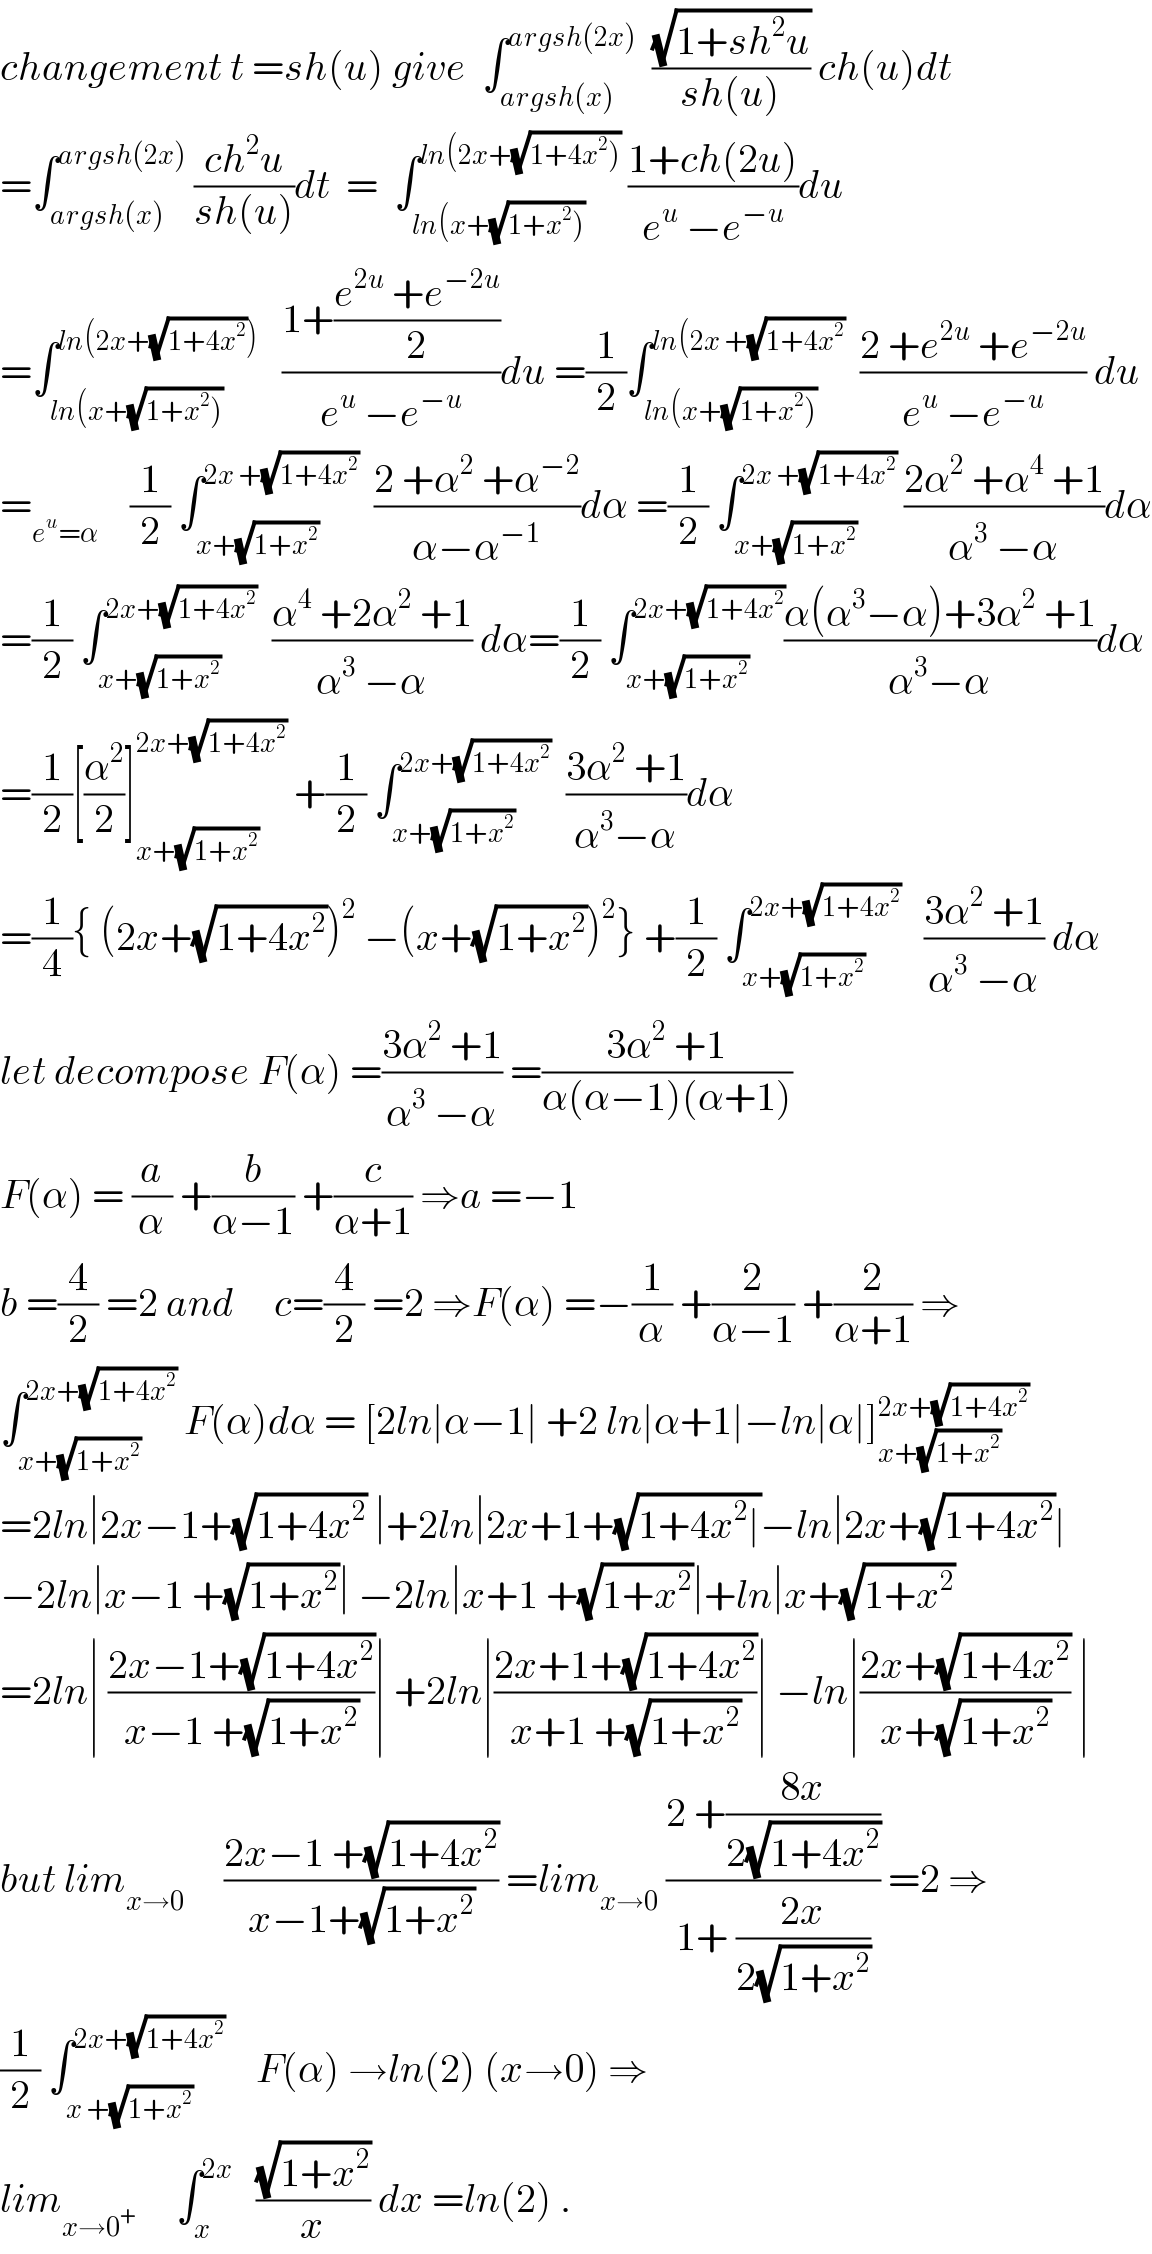 changement t =sh(u) give  ∫_(argsh(x)) ^(argsh(2x))   ((√(1+sh^2 u))/(sh(u))) ch(u)dt  =∫_(argsh(x)) ^(argsh(2x))  ((ch^2 u)/(sh(u)))dt  =  ∫_(ln(x+(√(1+x^2 )))) ^(ln(2x+(√(1+4x^2 ))))  ((1+ch(2u))/(e^u  −e^(−u) ))du  =∫_(ln(x+(√(1+x^2 )))) ^(ln(2x+(√(1+4x^2 ))))    ((1+((e^(2u)  +e^(−2u) )/2))/(e^u  −e^(−u) ))du =(1/2)∫_(ln(x+(√(1+x^2 )))) ^(ln(2x +(√(1+4x^2 )))   ((2 +e^(2u)  +e^(−2u) )/(e^u  −e^(−u) )) du  =_(e^u =α)     (1/2) ∫_(x+(√(1+x^2 ))) ^(2x +(√(1+4x^2 )))   ((2 +α^2  +α^(−2) )/(α−α^(−1) ))dα =(1/2) ∫_(x+(√(1+x^2 ))) ^(2x +(√(1+4x^2 )))  ((2α^2  +α^4  +1)/(α^3  −α))dα  =(1/2) ∫_(x+(√(1+x^2 ))) ^(2x+(√(1+4x^2 )))   ((α^4  +2α^2  +1)/(α^3  −α)) dα=(1/2) ∫_(x+(√(1+x^2 ))) ^(2x+(√(1+4x^2 ))) ((α(α^3 −α)+3α^2  +1)/(α^3 −α))dα  =(1/2)[(α^2 /2)]_(x+(√(1+x^2 ))) ^(2x+(√(1+4x^2 )))  +(1/2) ∫_(x+(√(1+x^2 ))) ^(2x+(√(1+4x^2 )))   ((3α^2  +1)/(α^3 −α))dα  =(1/4){ (2x+(√(1+4x^2 )))^2  −(x+(√(1+x^2 )))^2 } +(1/2) ∫_(x+(√(1+x^2 ))) ^(2x+(√(1+4x^2 )))    ((3α^2  +1)/(α^3  −α)) dα  let decompose F(α) =((3α^2  +1)/(α^3  −α)) =((3α^2  +1)/(α(α−1)(α+1)))  F(α) = (a/α) +(b/(α−1)) +(c/(α+1)) ⇒a =−1     b =(4/2) =2 and     c=(4/2) =2 ⇒F(α) =−(1/α) +(2/(α−1)) +(2/(α+1)) ⇒  ∫_(x+(√(1+x^2 ))) ^(2x+(√(1+4x^2 )))  F(α)dα = [2ln∣α−1∣ +2 ln∣α+1∣−ln∣α∣]_(x+(√(1+x^2 ))) ^(2x+(√(1+4x^2 )))   =2ln∣2x−1+(√(1+4x^2 )) ∣+2ln∣2x+1+(√(1+4x^2 ∣))−ln∣2x+(√(1+4x^2 ))∣  −2ln∣x−1 +(√(1+x^2 ))∣ −2ln∣x+1 +(√(1+x^2 ))∣+ln∣x+(√(1+x^2 ))   =2ln∣ ((2x−1+(√(1+4x^2 )))/(x−1 +(√(1+x^2 ))))∣ +2ln∣((2x+1+(√(1+4x^2 )))/(x+1 +(√(1+x^2 ))))∣ −ln∣((2x+(√(1+4x^2 )))/(x+(√(1+x^2 )))) ∣  but lim_(x→0)      ((2x−1 +(√(1+4x^2 )))/(x−1+(√(1+x^2 )))) =lim_(x→0)  ((2 +((8x)/(2(√(1+4x^2 )))))/(1+ ((2x)/(2(√(1+x^2 )))))) =2 ⇒  (1/2) ∫_(x +(√(1+x^2 ))) ^(2x+(√(1+4x^2 )))     F(α) →ln(2) (x→0) ⇒  lim_(x→0^+ )      ∫_x ^(2x)    ((√(1+x^2 ))/x) dx =ln(2) .  